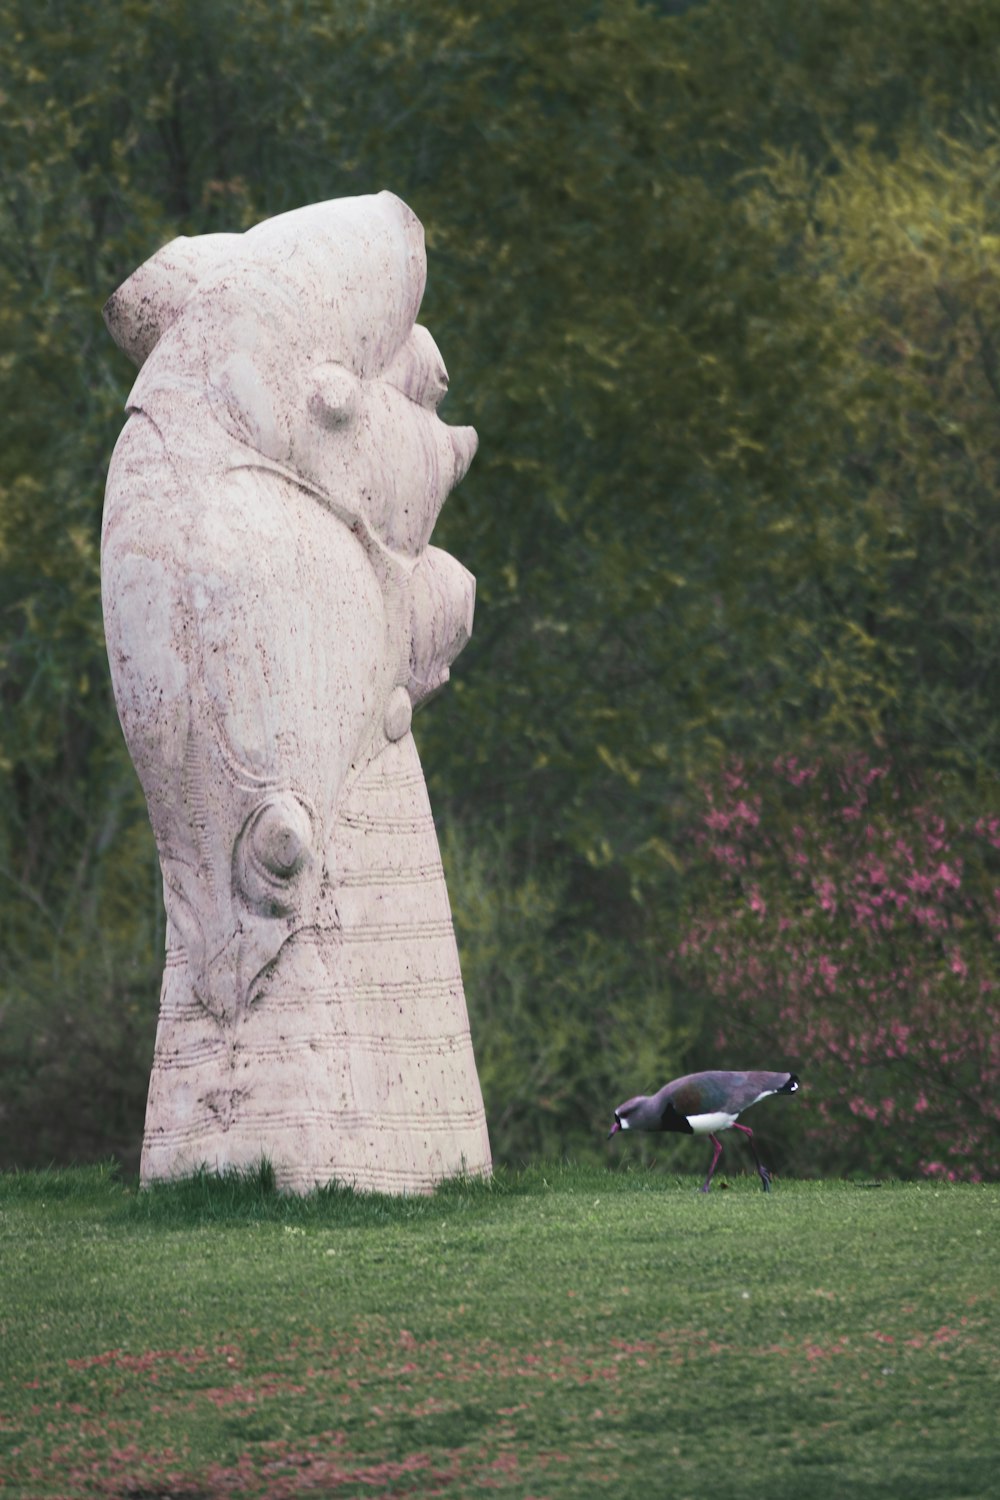 a bird standing next to a statue of a bear